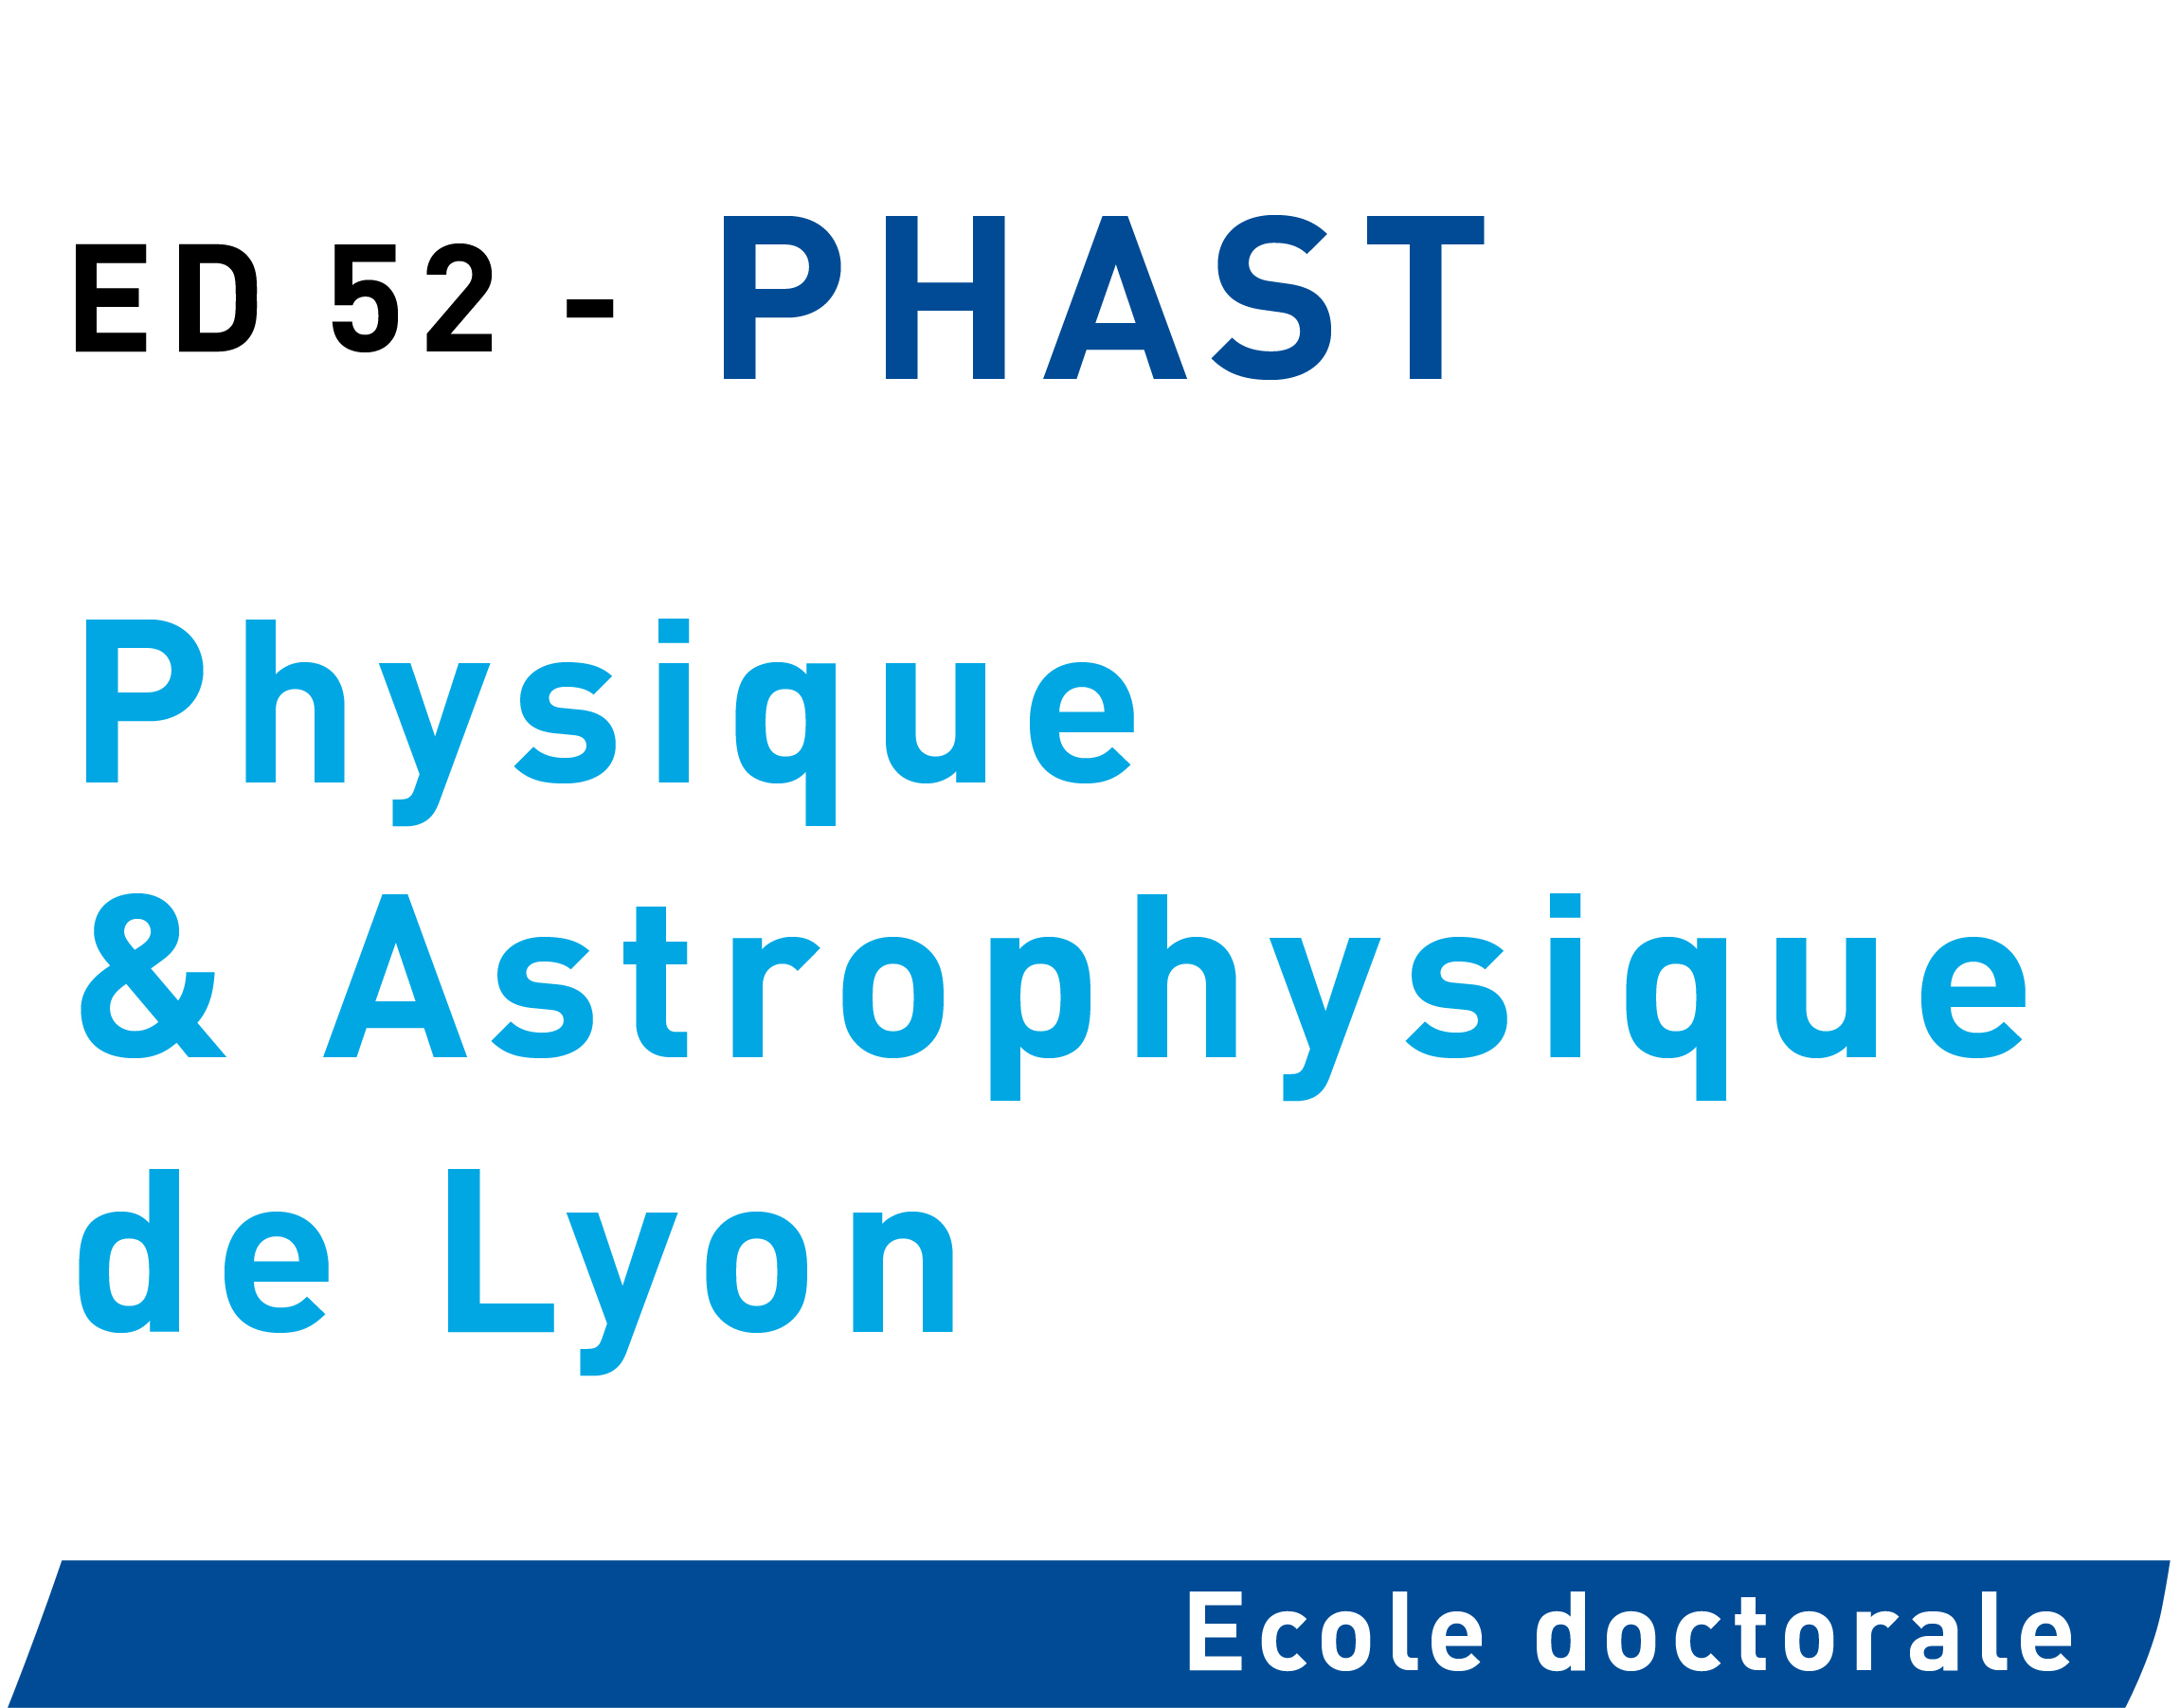 Physique & Astrophysique de Lyon